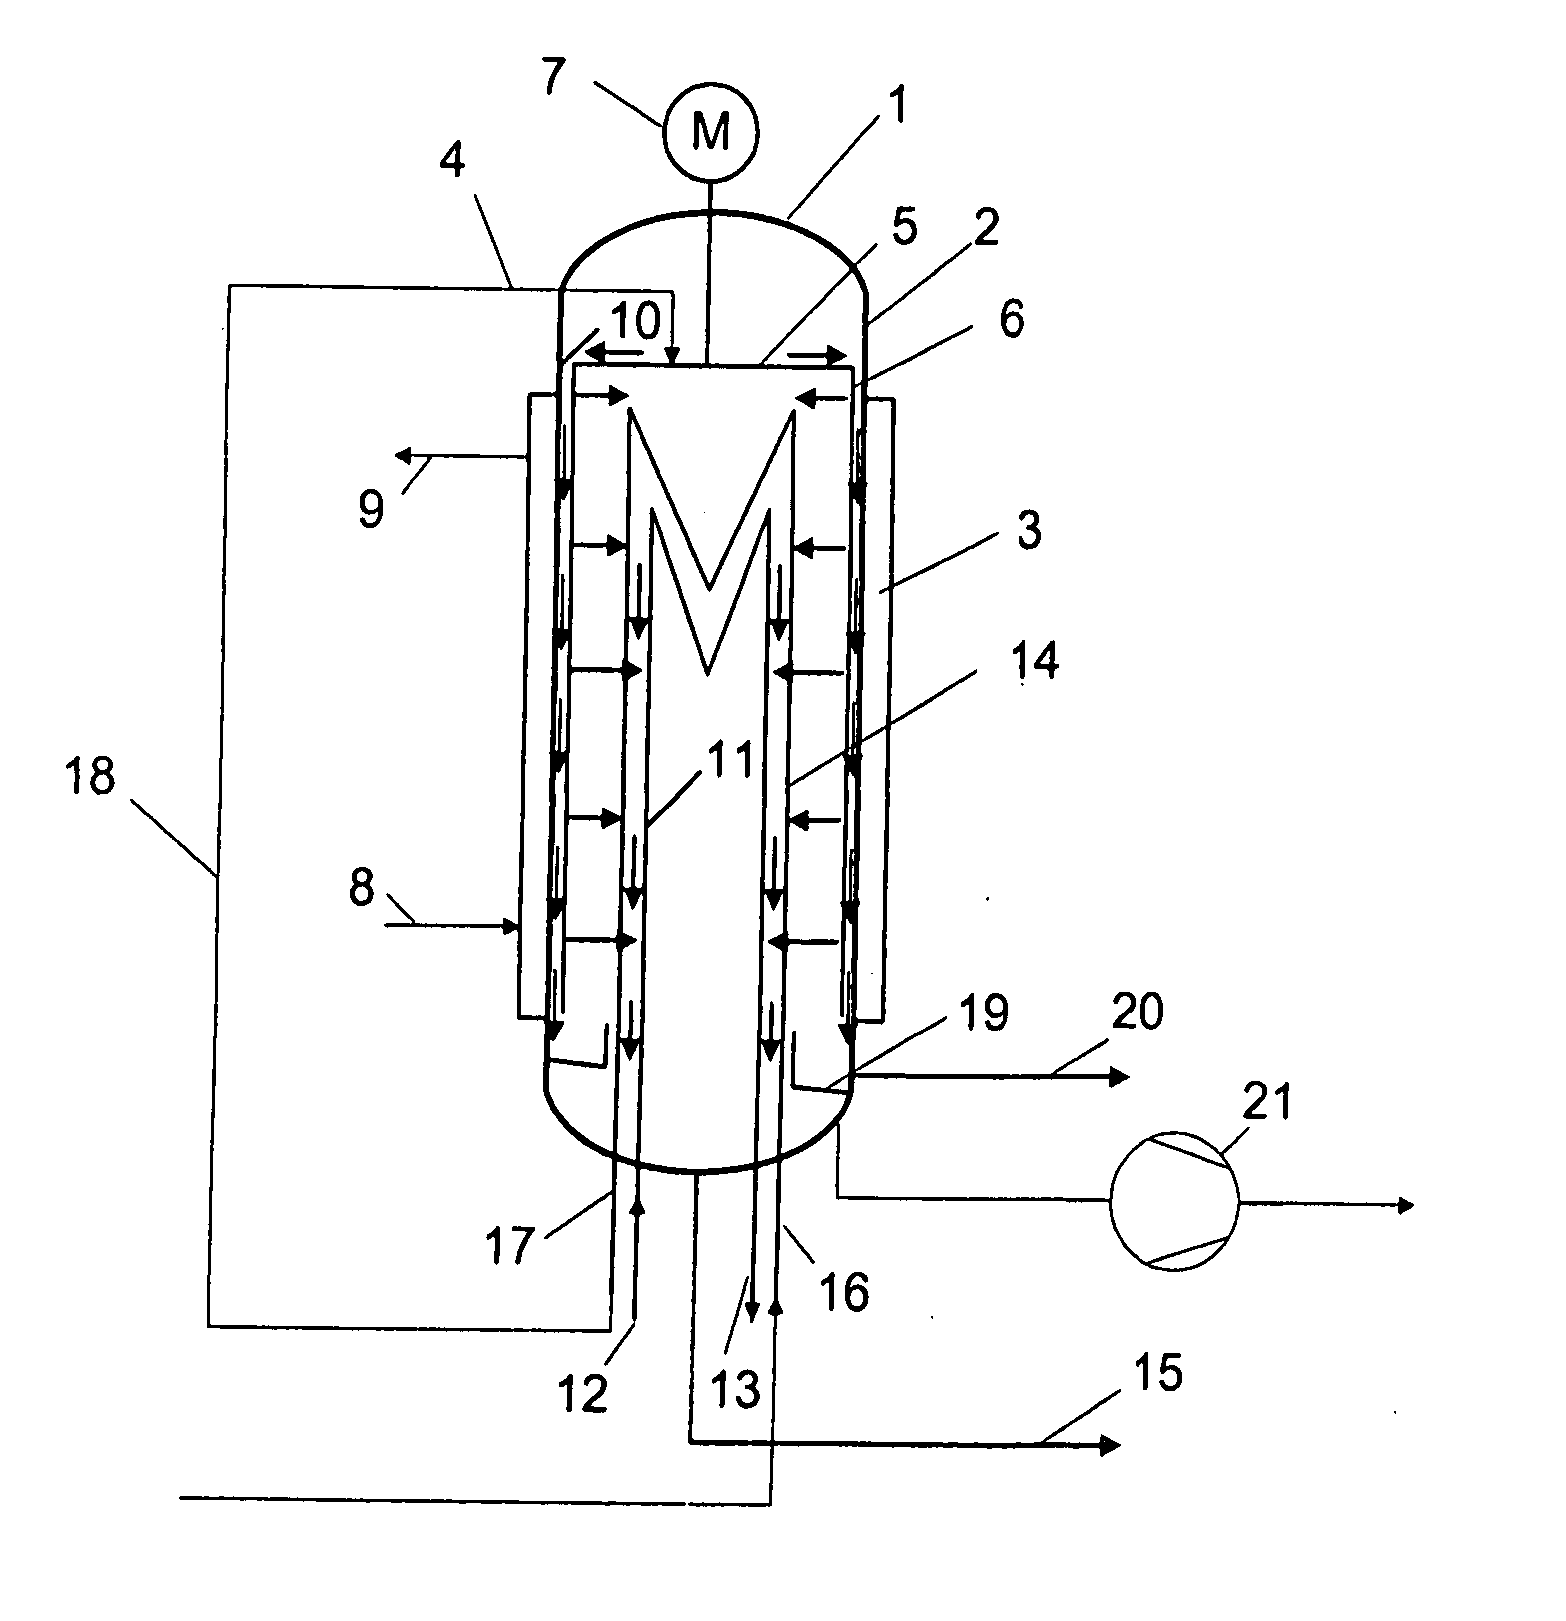 Thin-film evaporator